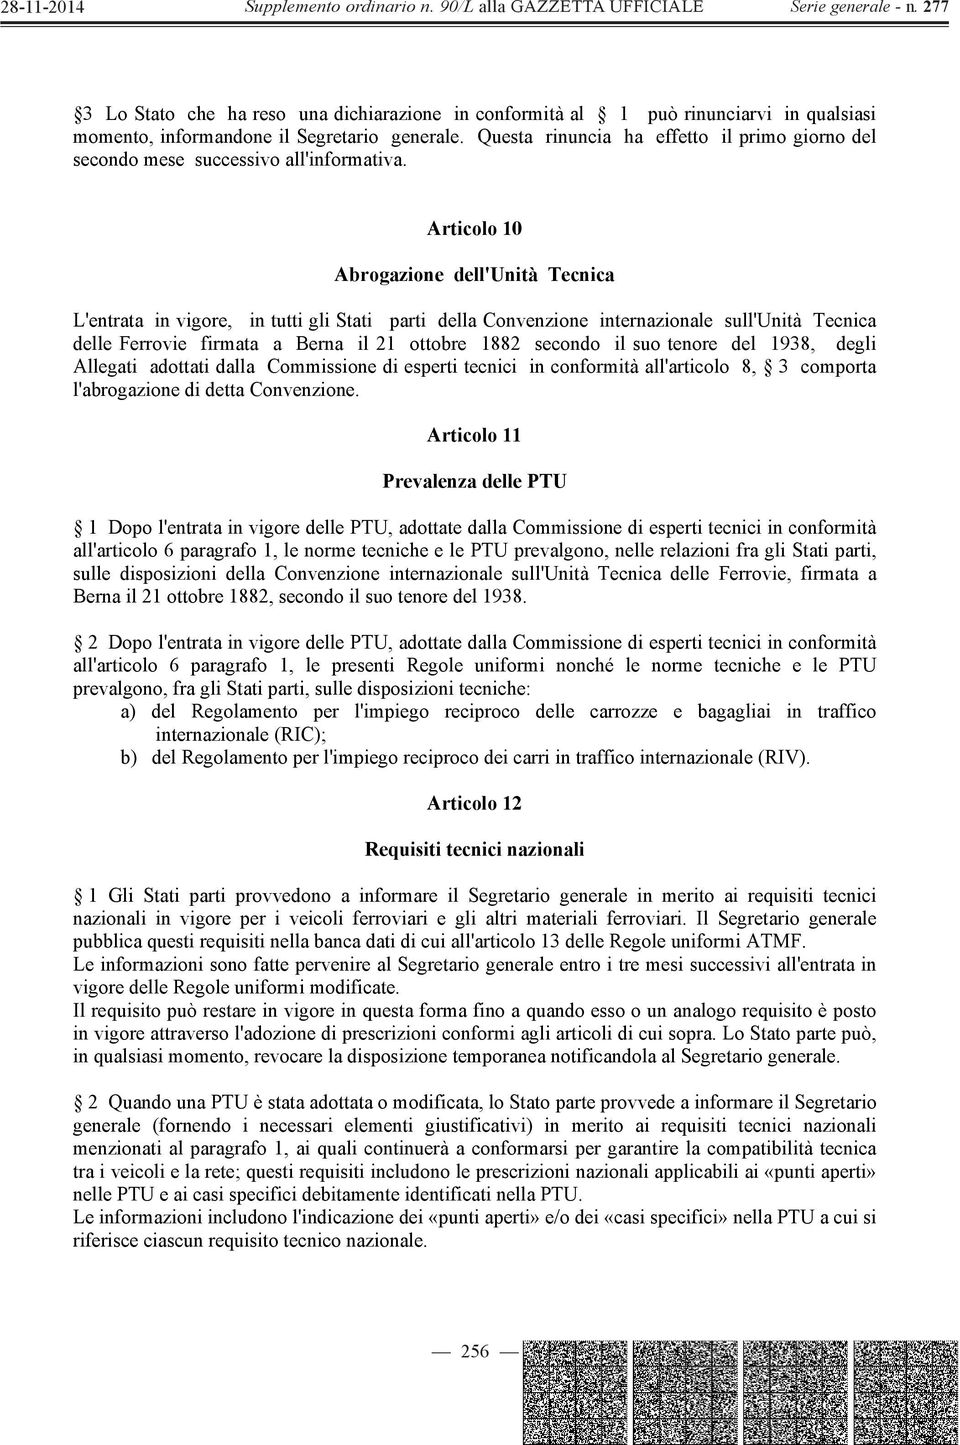 Articolo 10 Abrogazione dell'unità Tecnica L'entrata in vigore, in tutti gli Stati parti della Convenzione internazionale sull'unità Tecnica delle Ferrovie firmata a Berna il 21 ottobre 1882 secondo